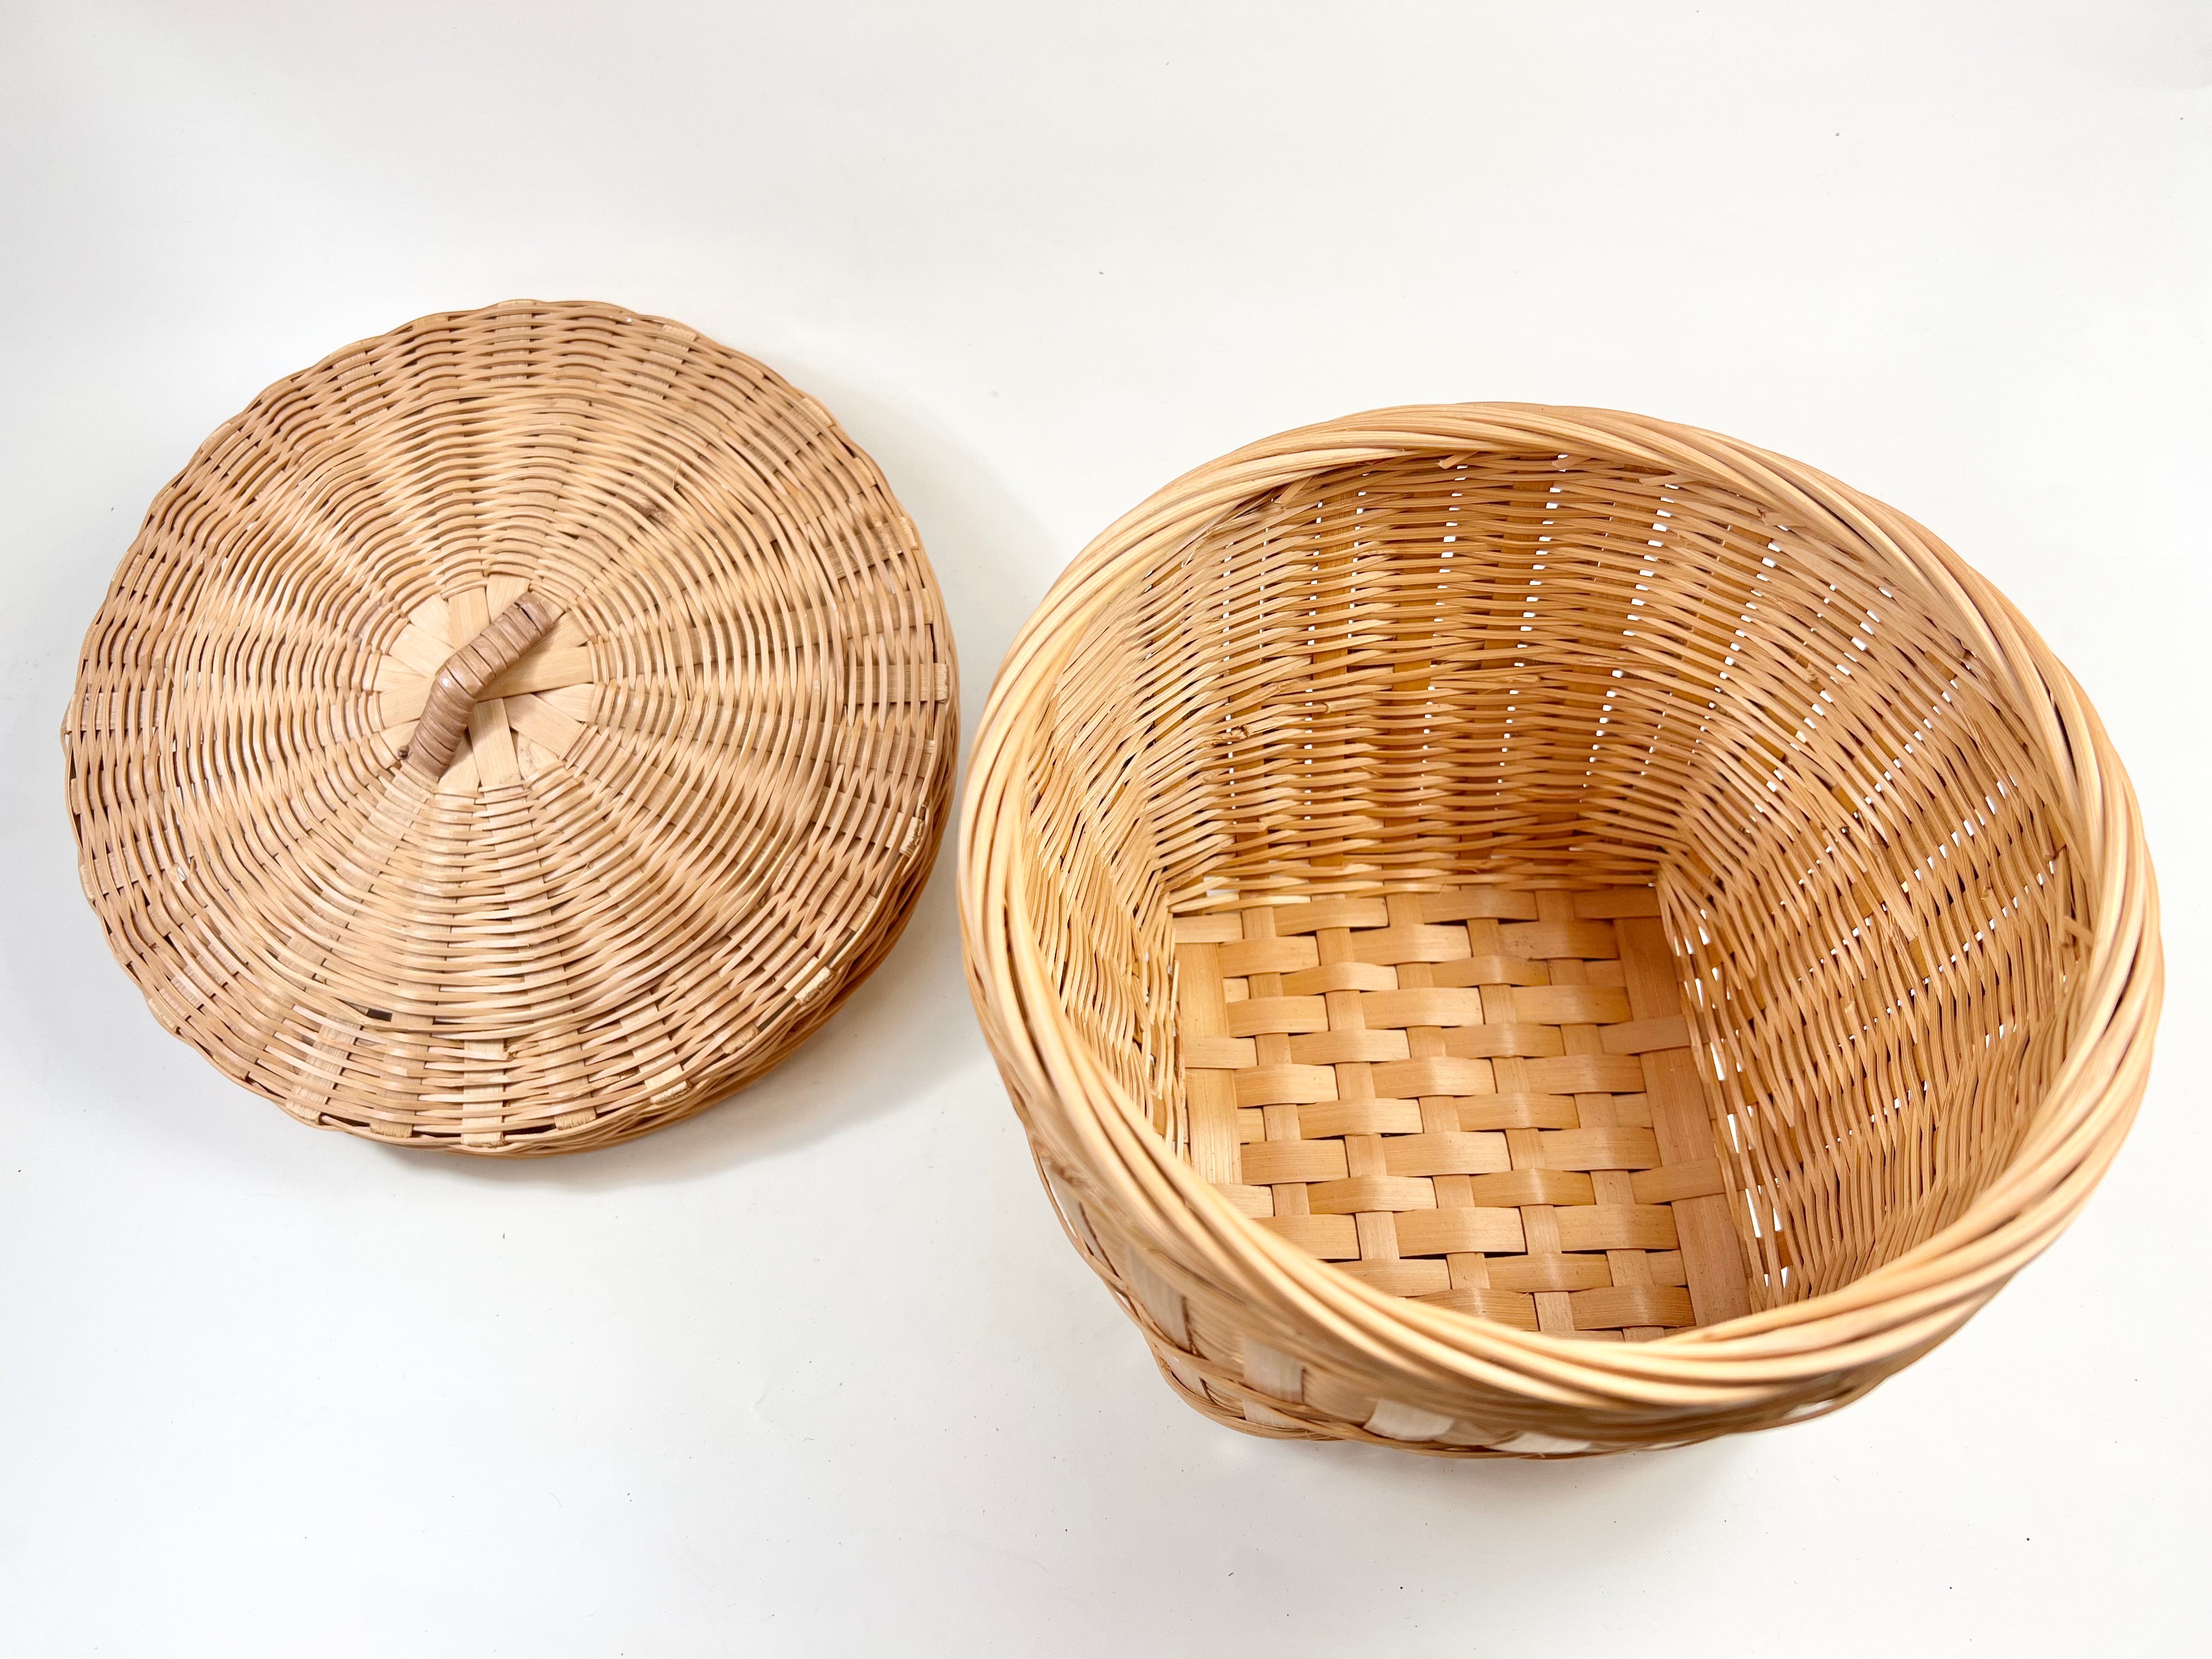 Small Lidded Wicker Basket